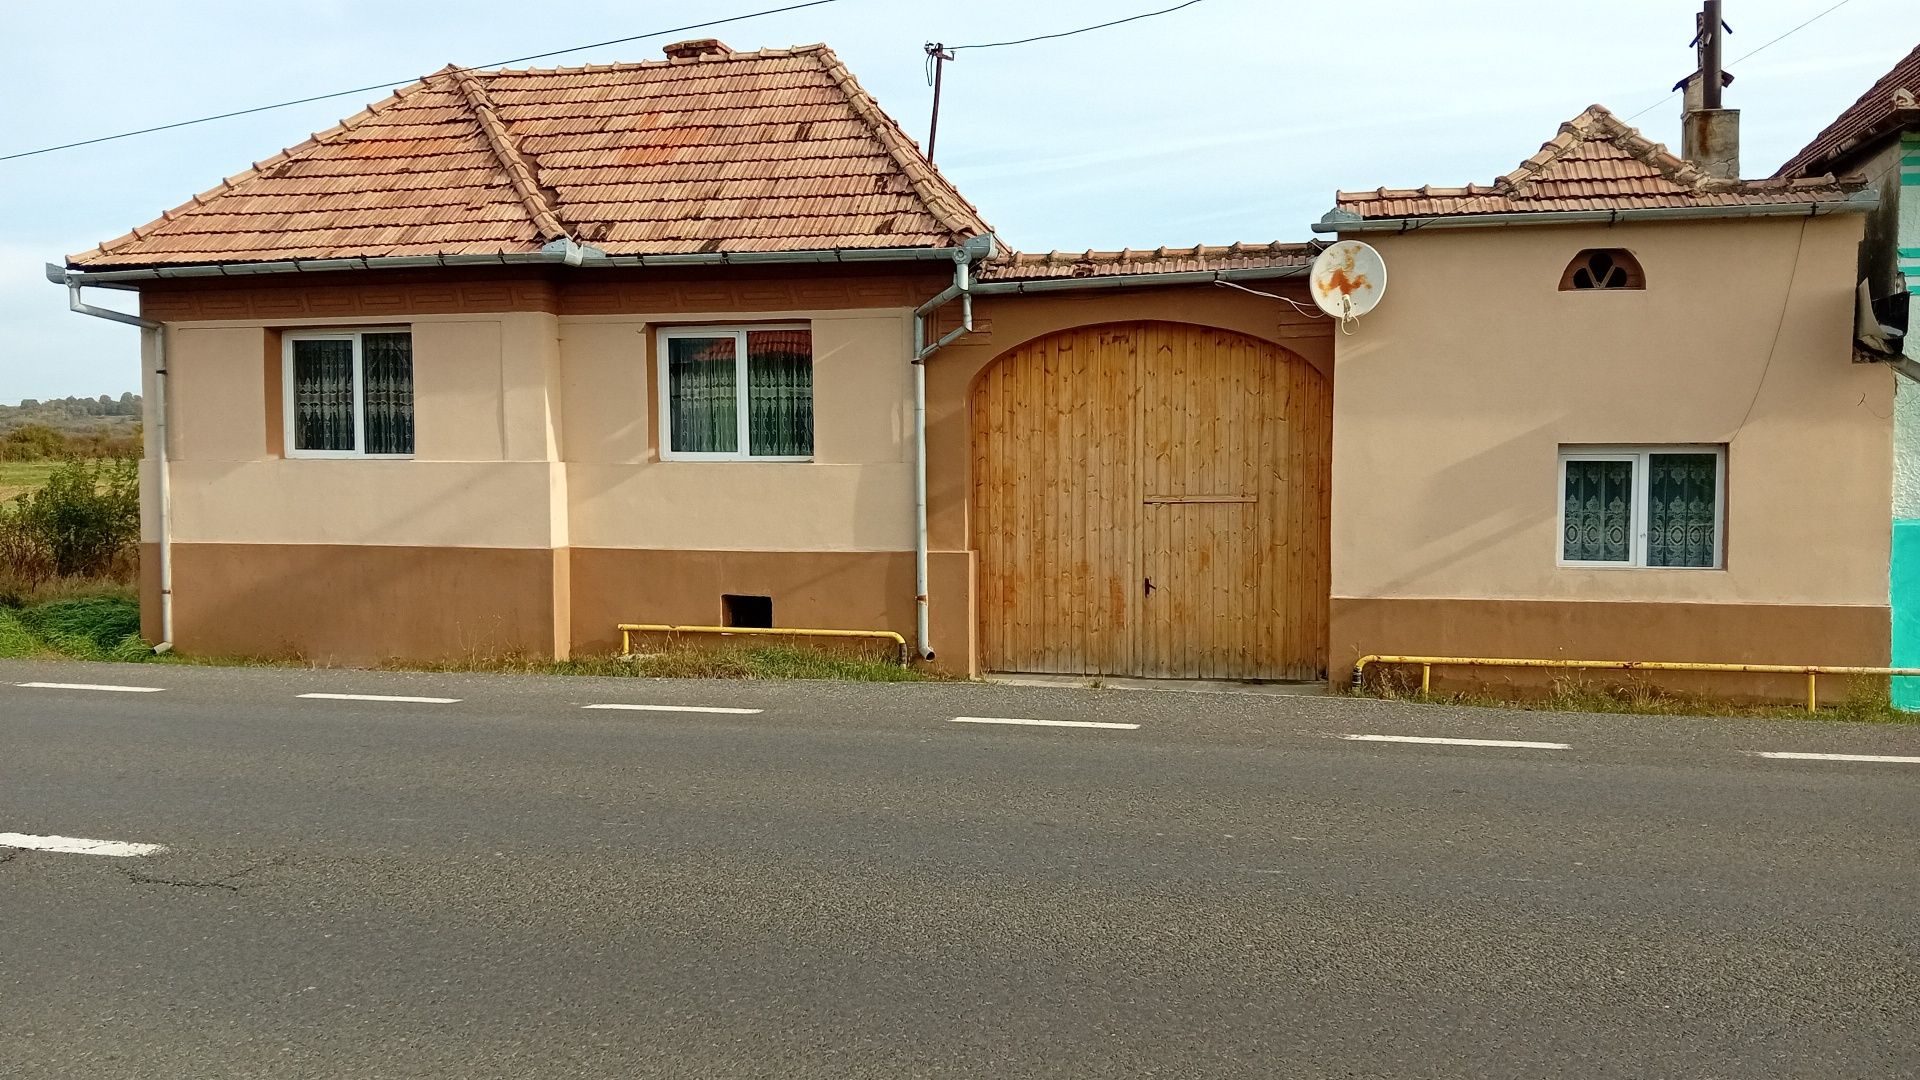 Casa în sat Săcel  oraș Săliște jud sibiu cu teren 3000 m2